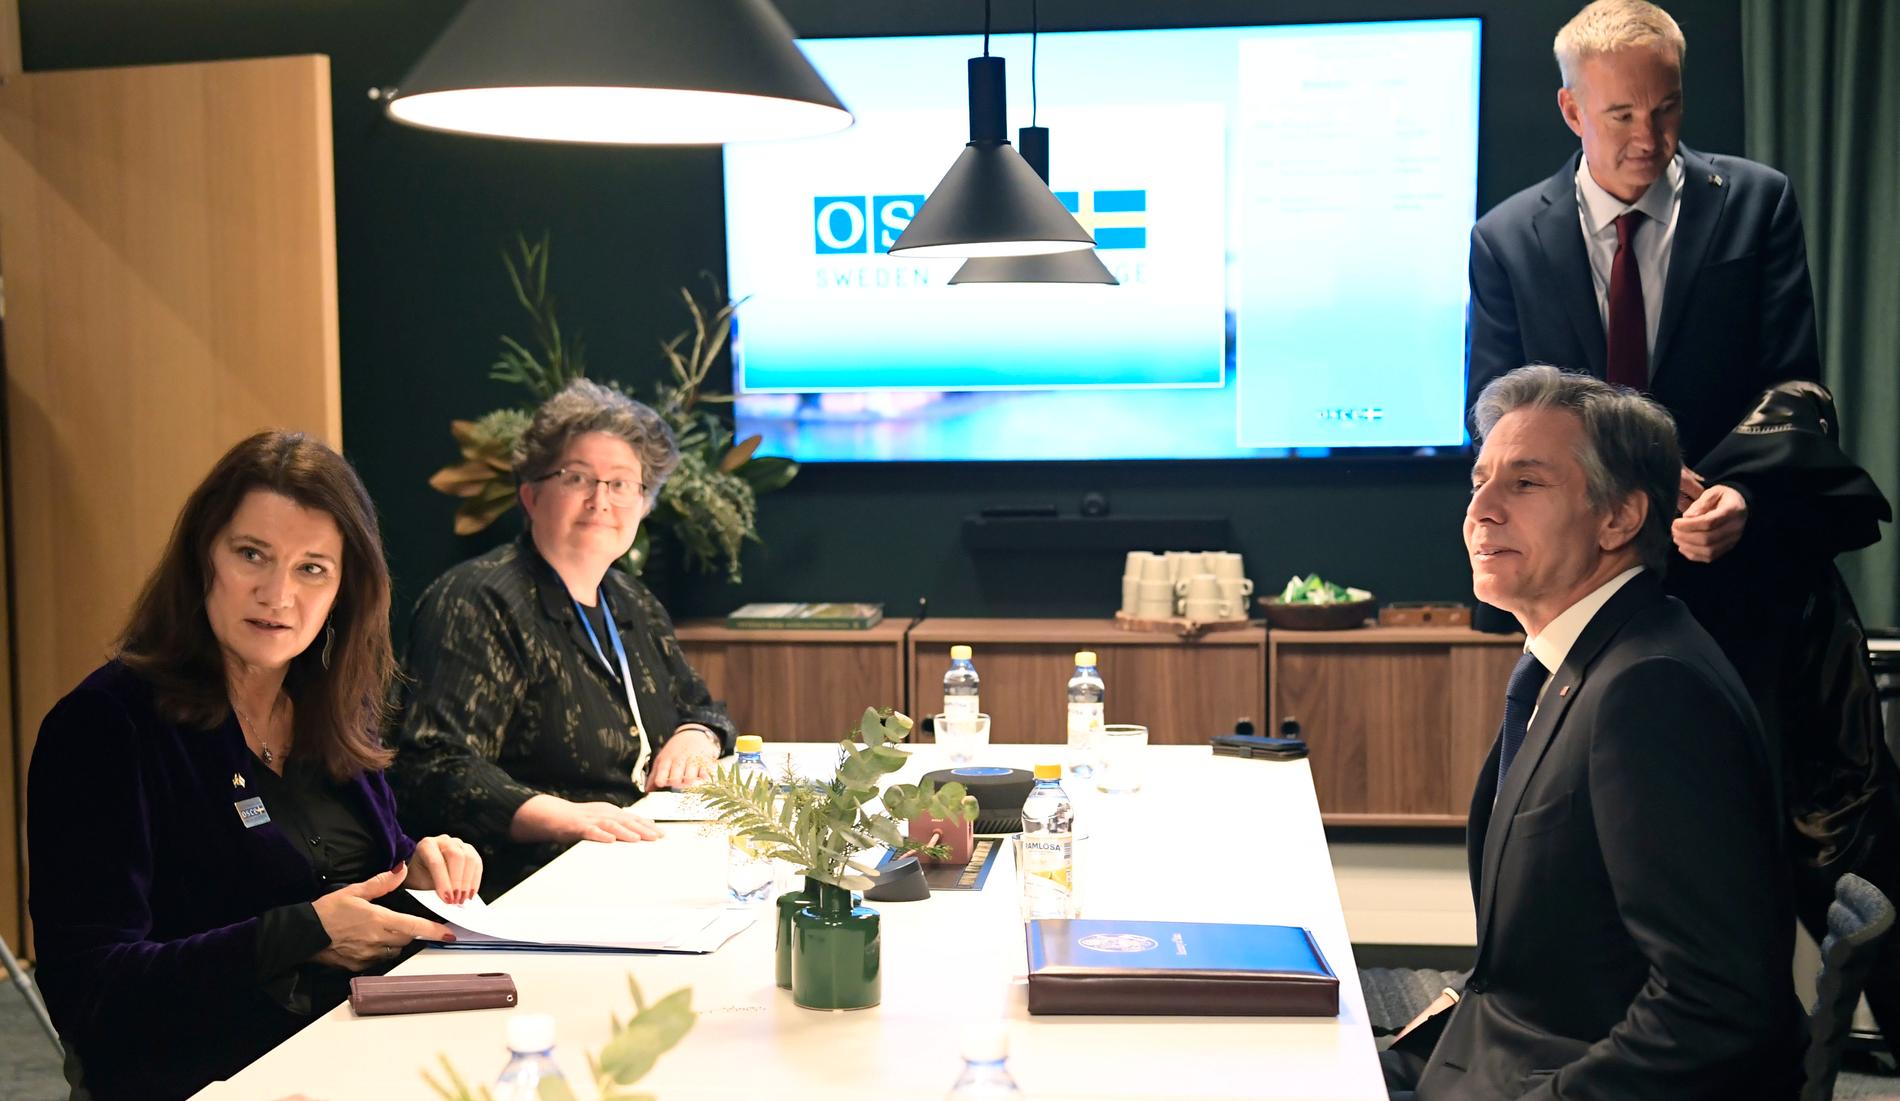 Utrikesministrarna Ann Linde och Antony Blinken under ett bilateralt möte på ett konferenshotell.